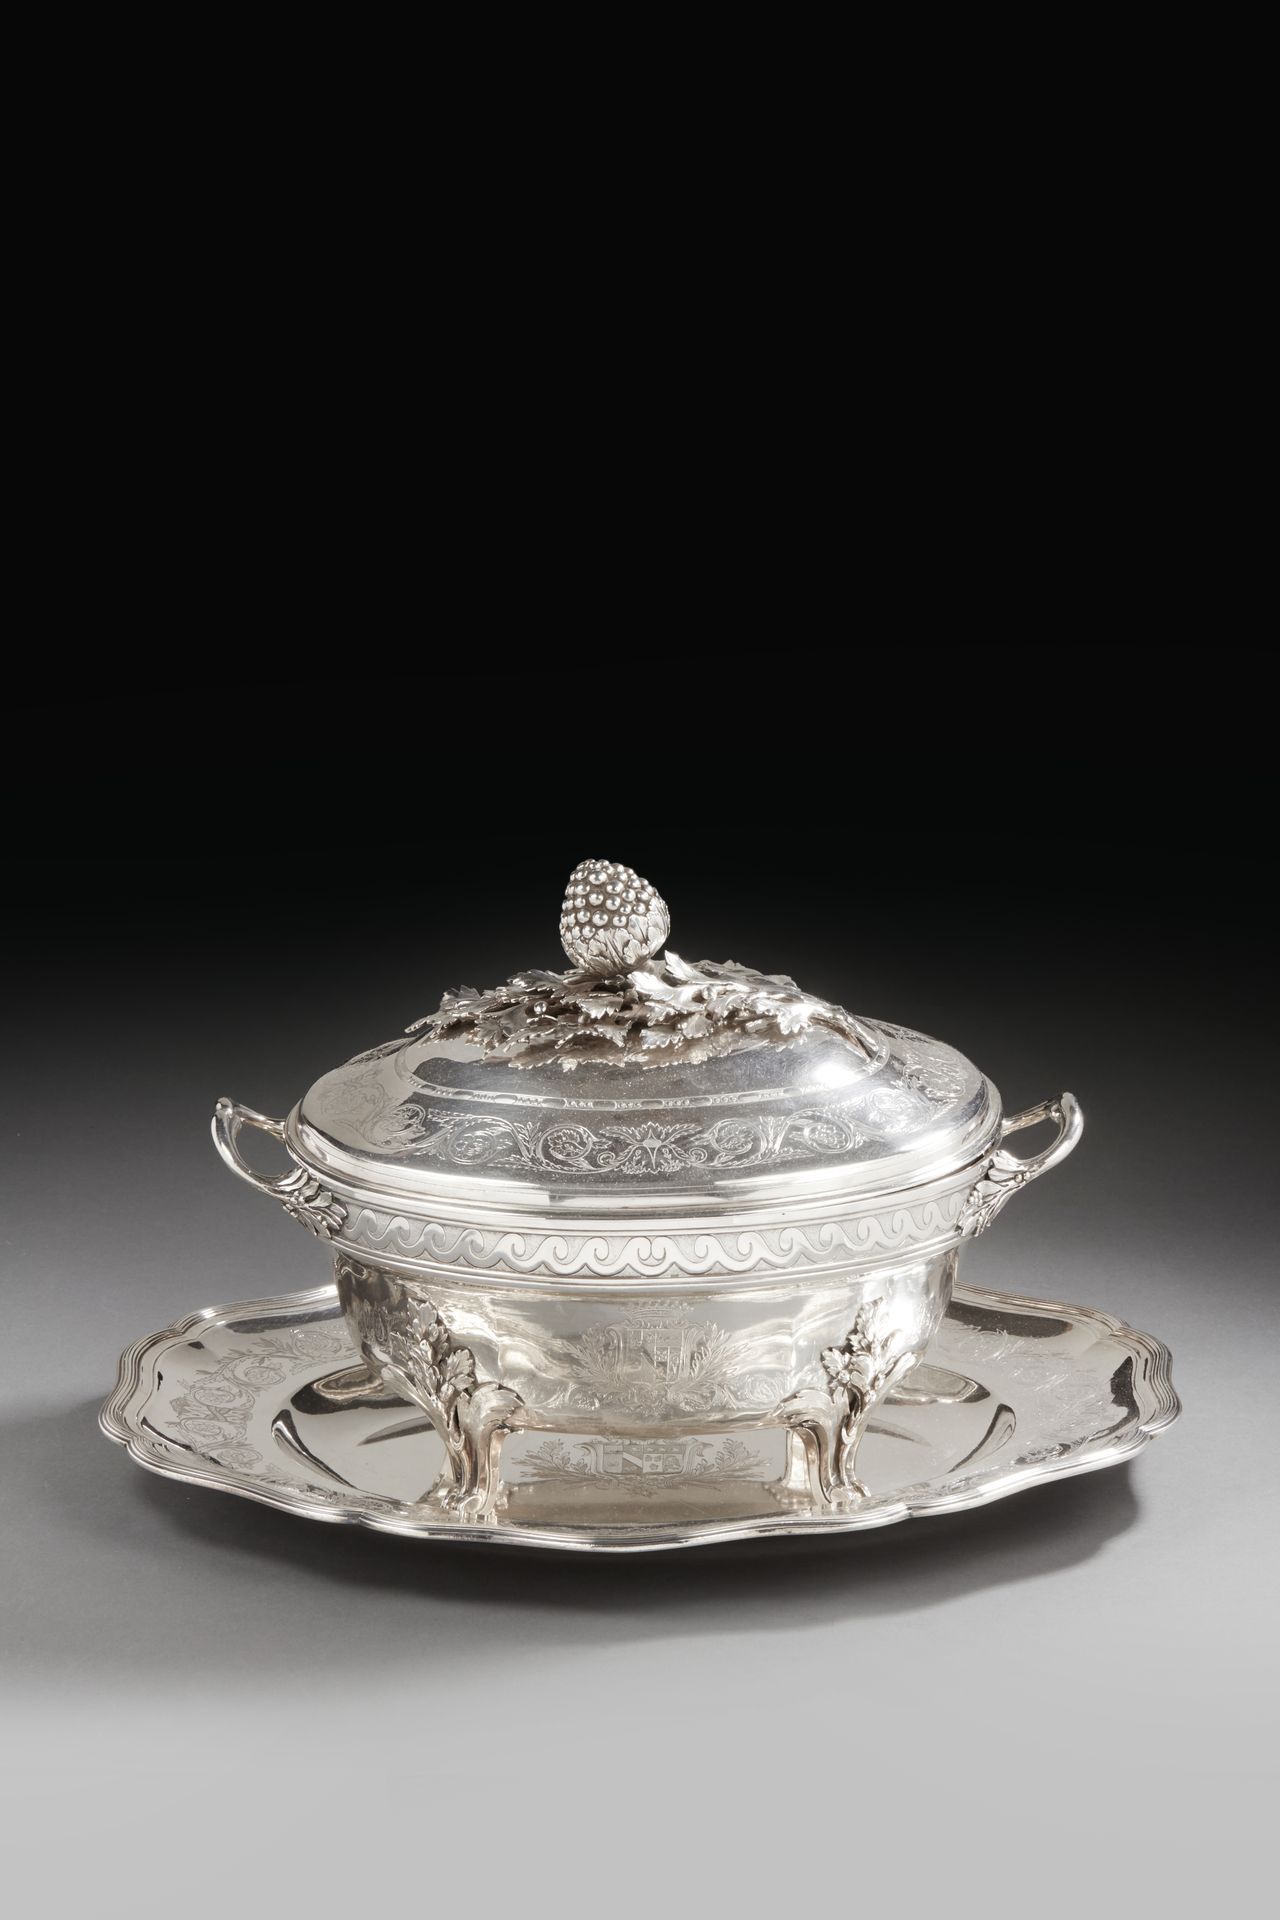 Null 巴黎 1782 - 1783
银质茶壶，带有其框架和衬里。椭圆形的盘子以鱼片为边，边缘刻有一系列的花和叶的卷轴。它的中央刻有纹章，纹章在瓦罐和衬里上重&hellip;